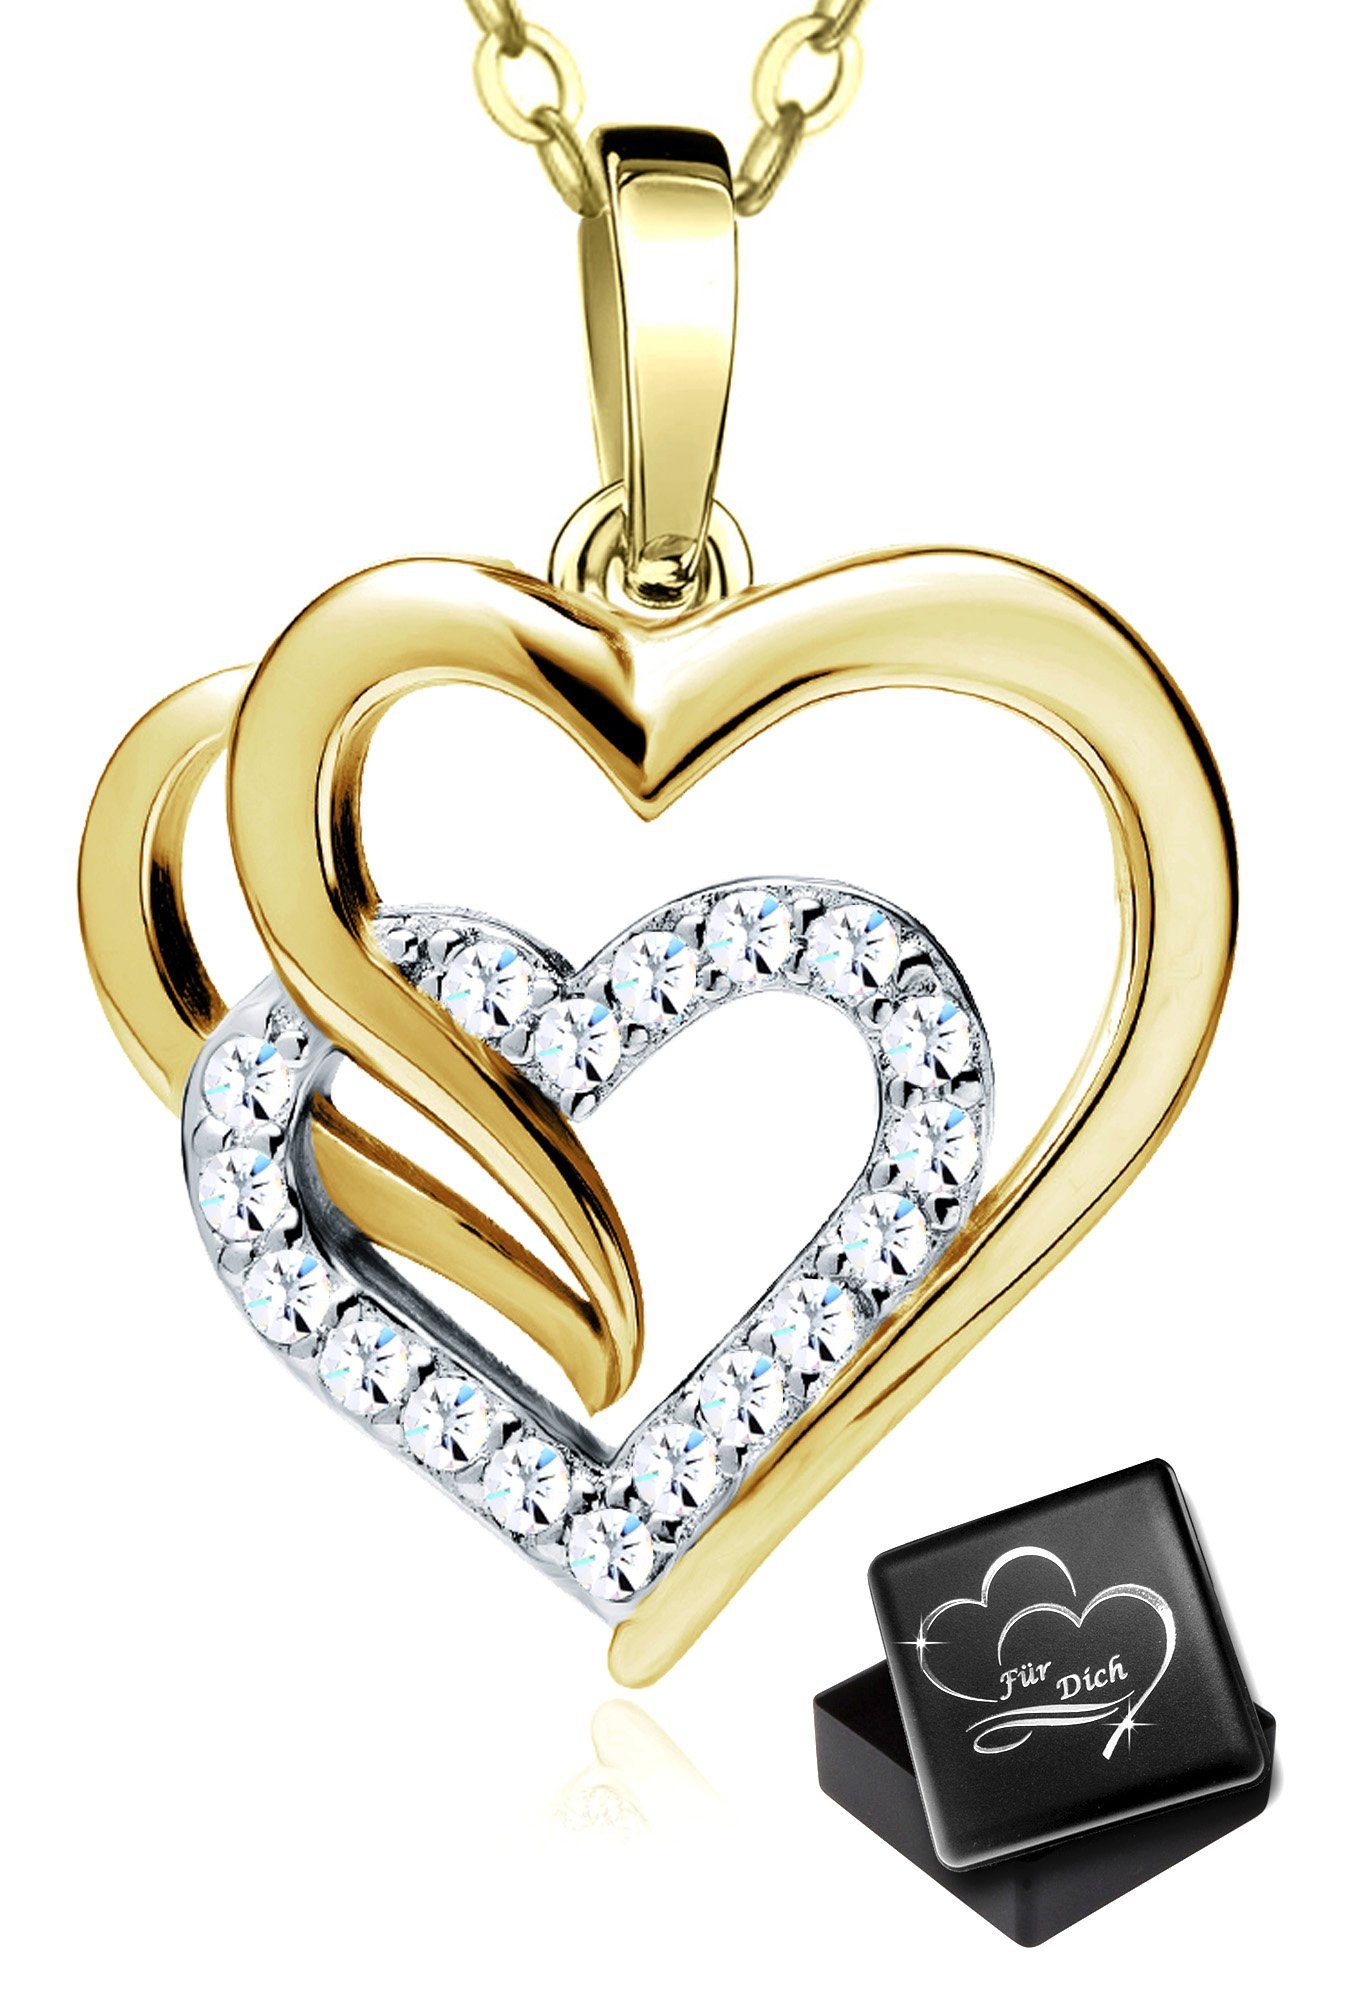 Limana Herzkette Halskette für Damen echt 925 Silber Kette mit Herz Anhänger gold, Frauen Damen Geschenk Idee Liebe